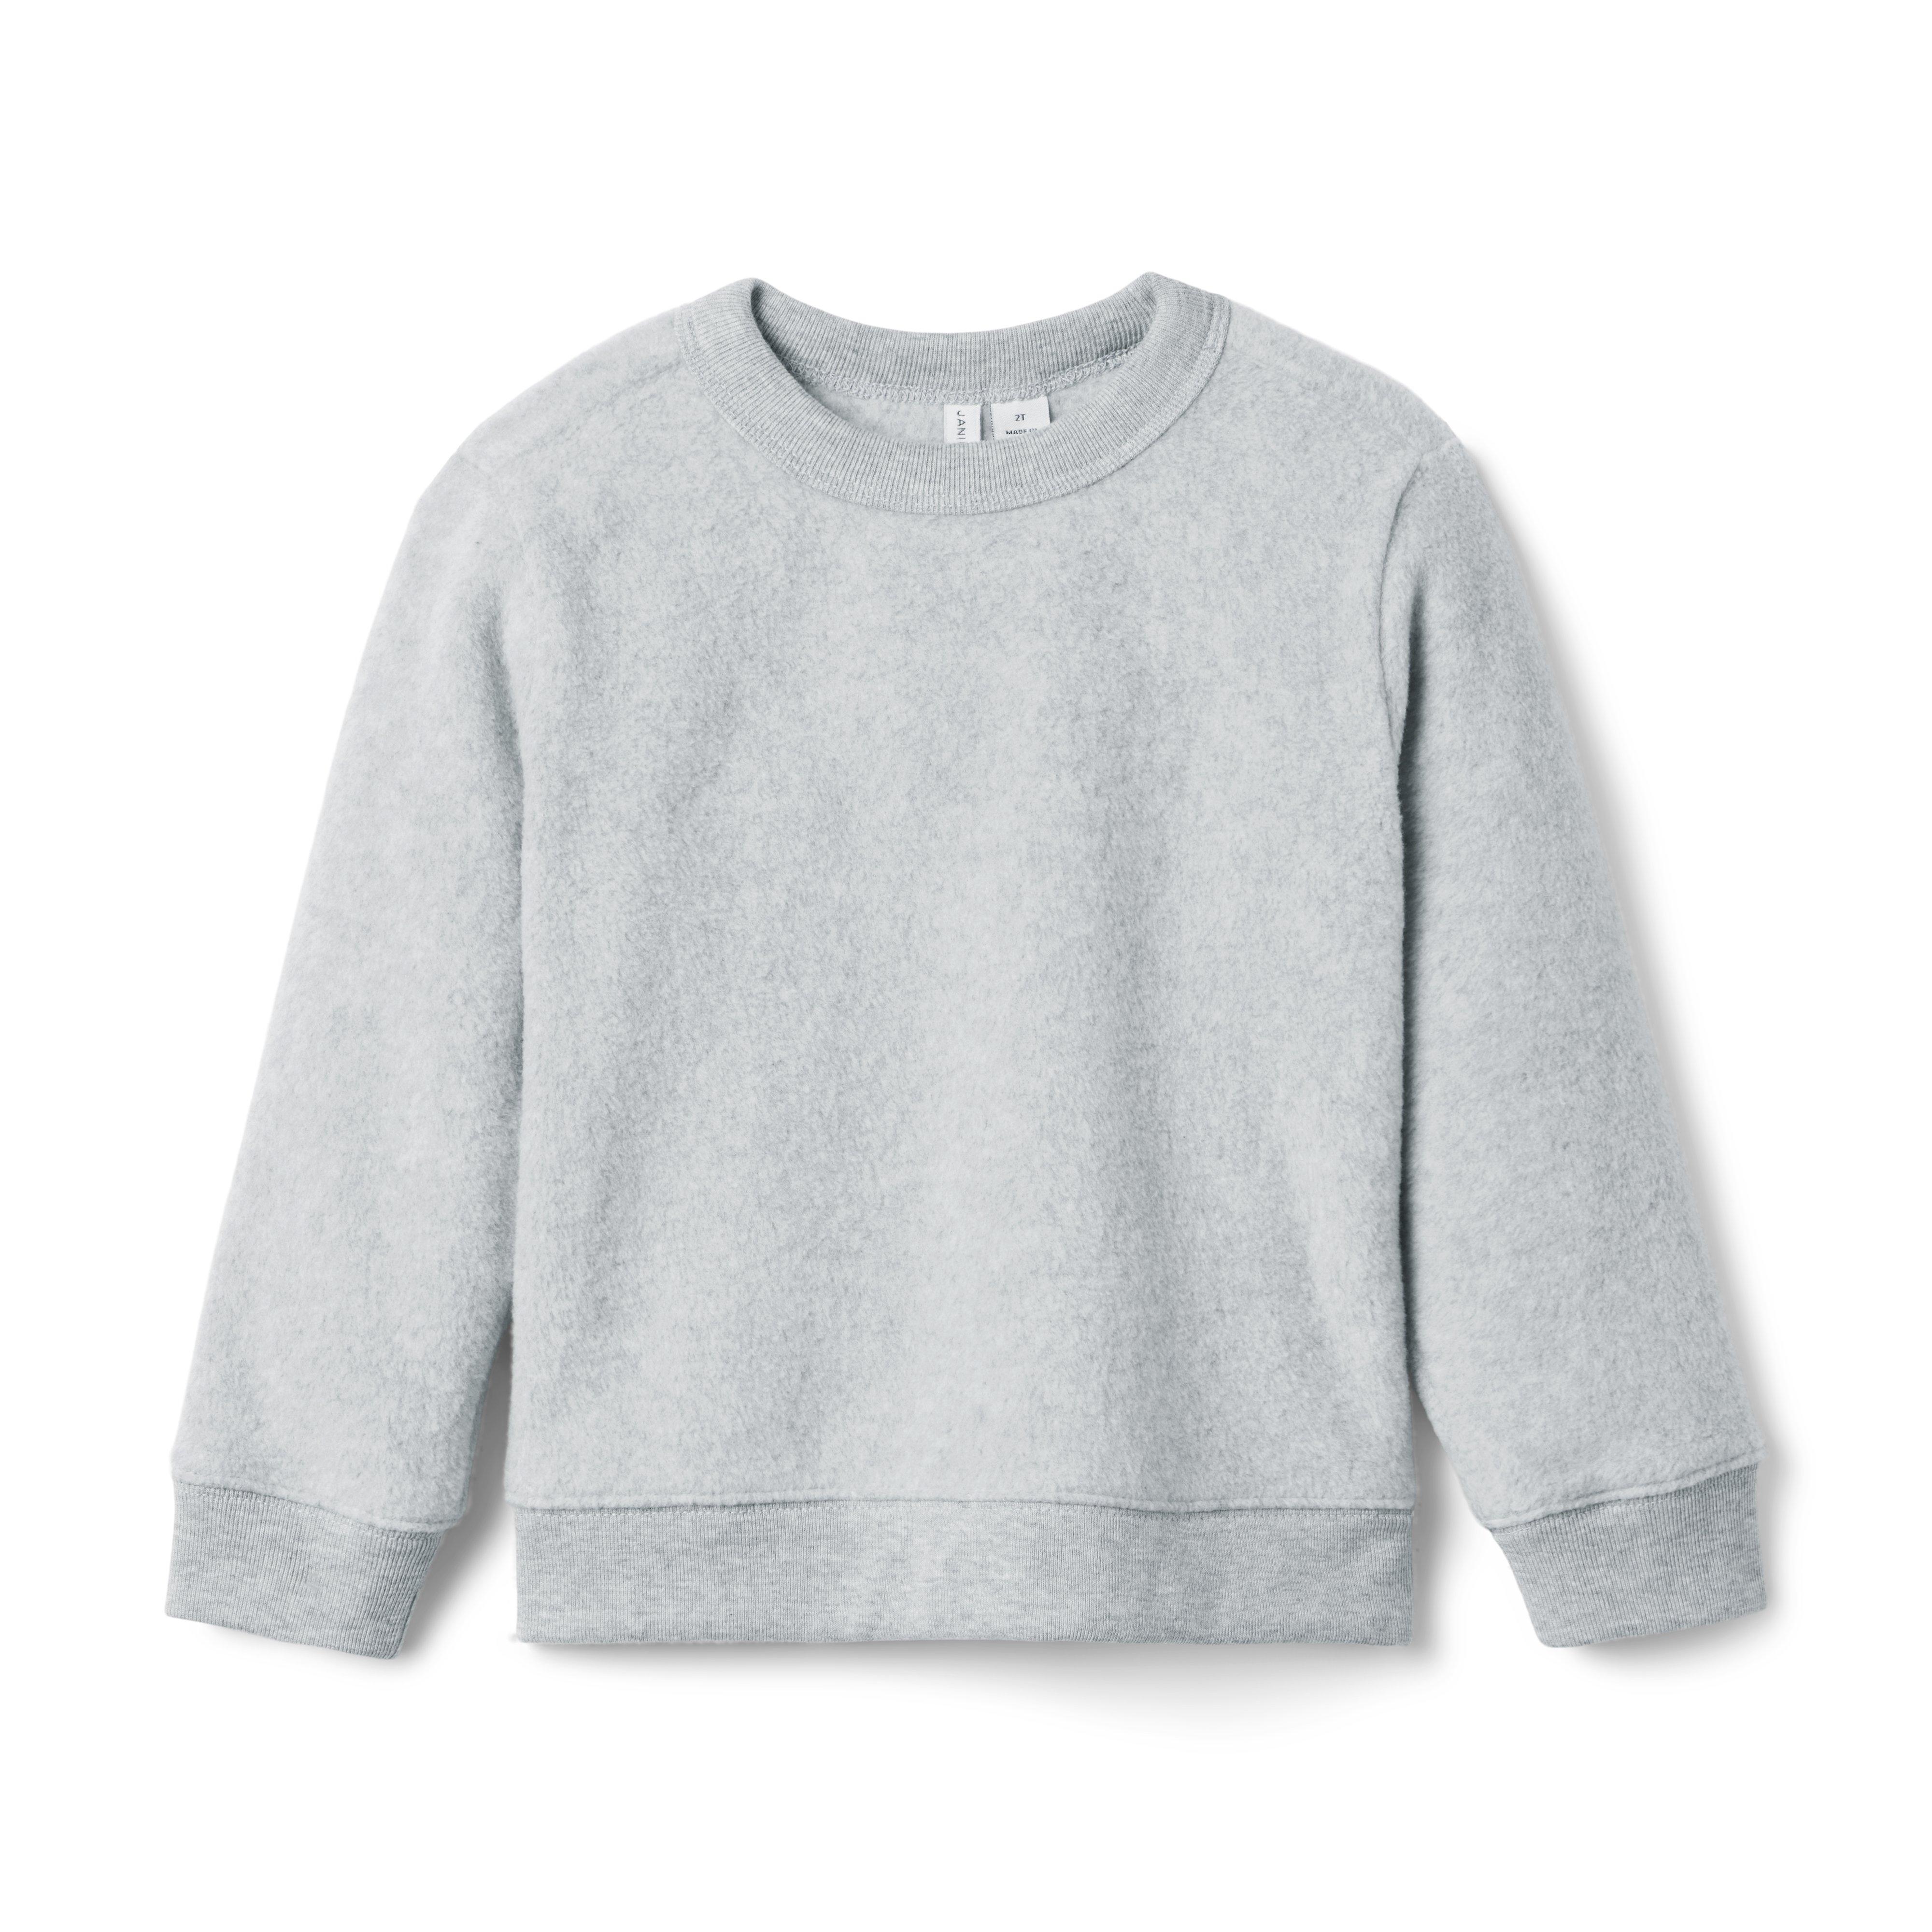 The Fleece Sweatshirt